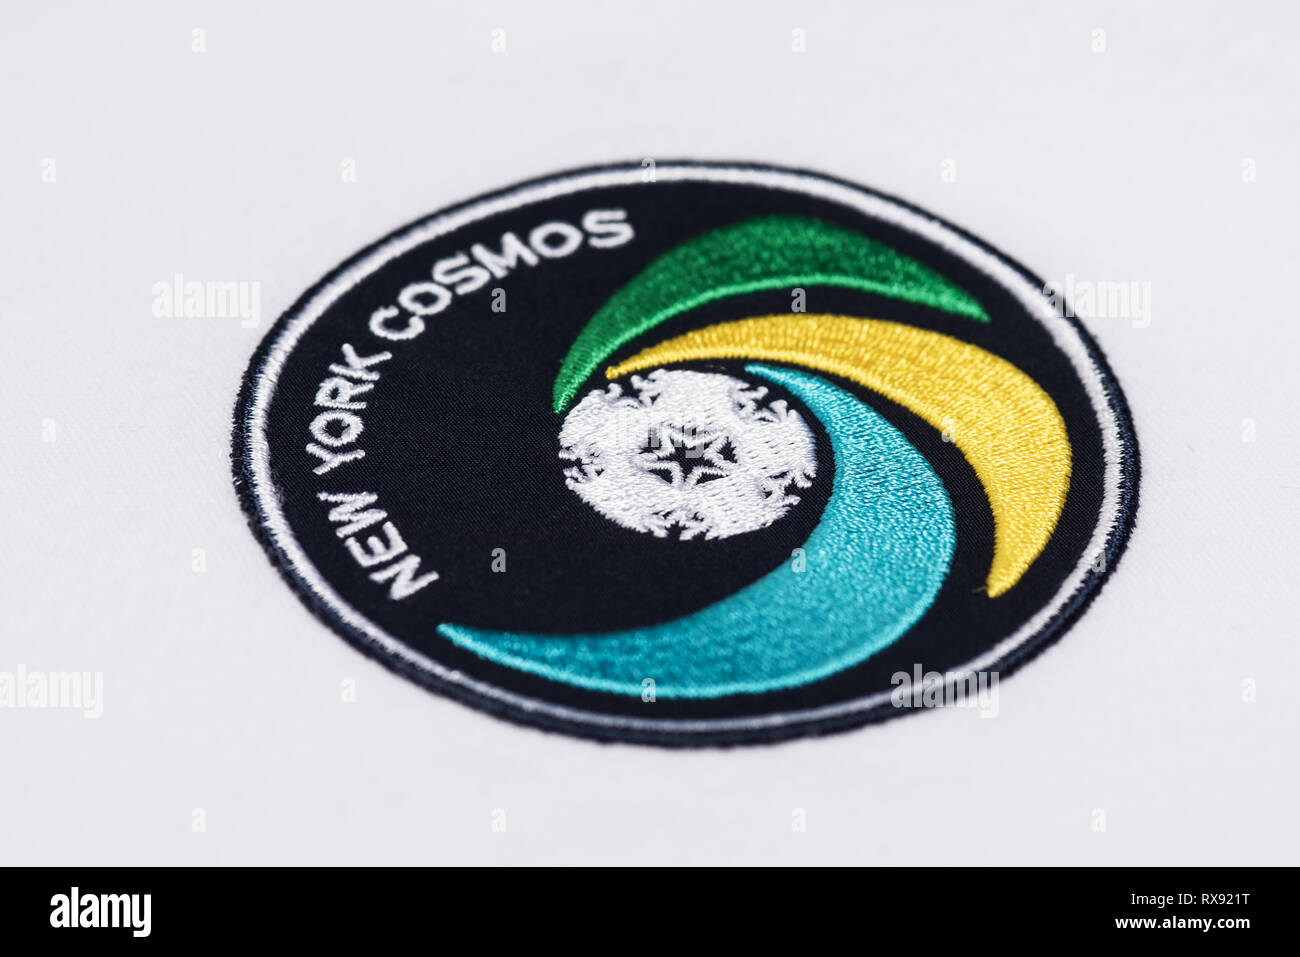 Cerca de Retro NY Cosmos un jersey de fútbol Foto de stock